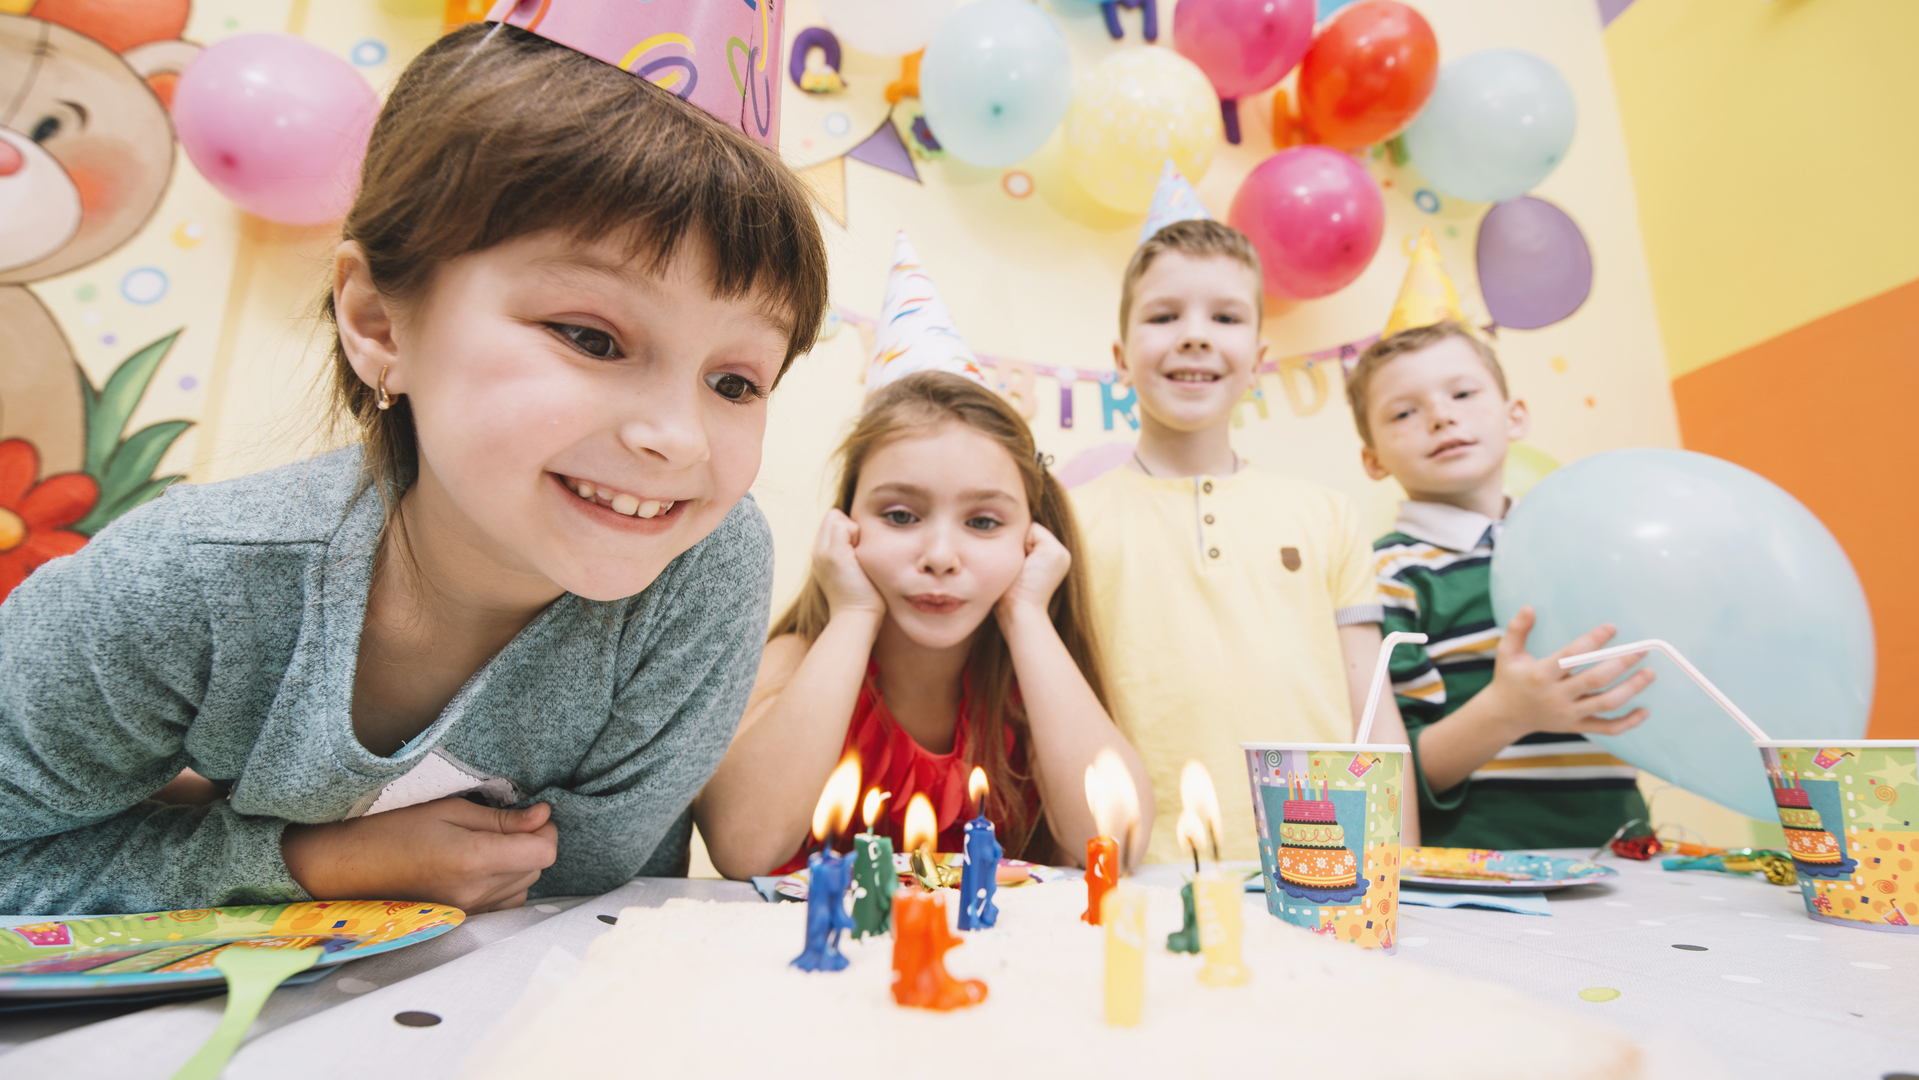 Dónde celebrar cumpleaños infantiles en A Coruña?